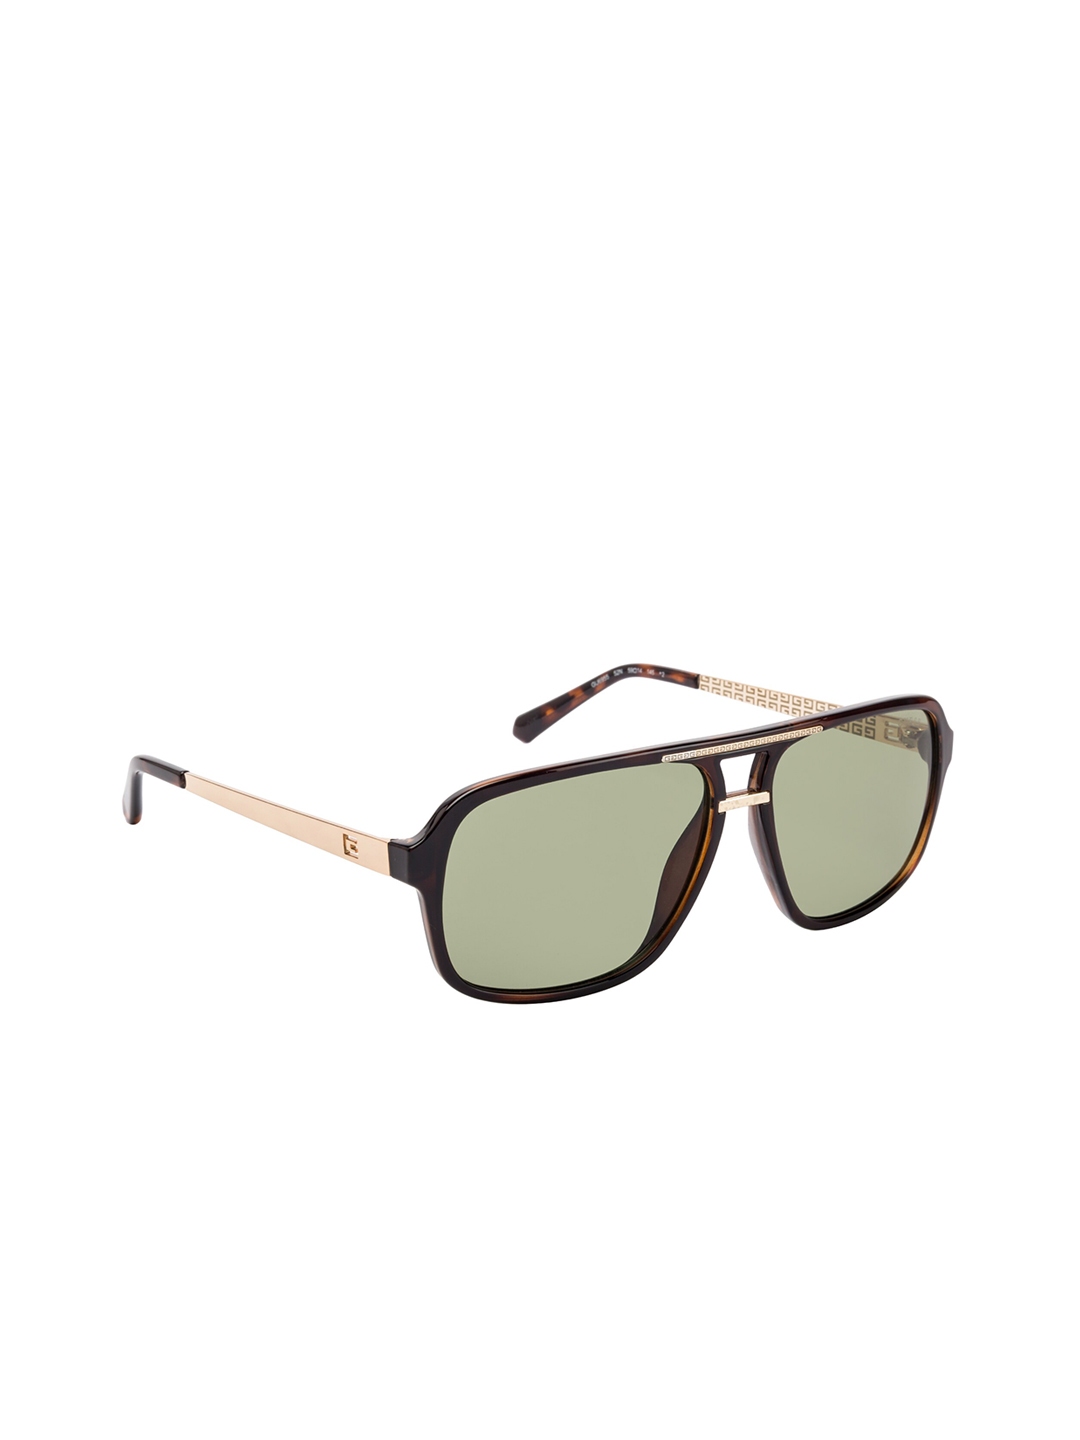 Buy GUESS Men Aviator Sunglasses GU6955 59 52N - Sunglasses for Men ...